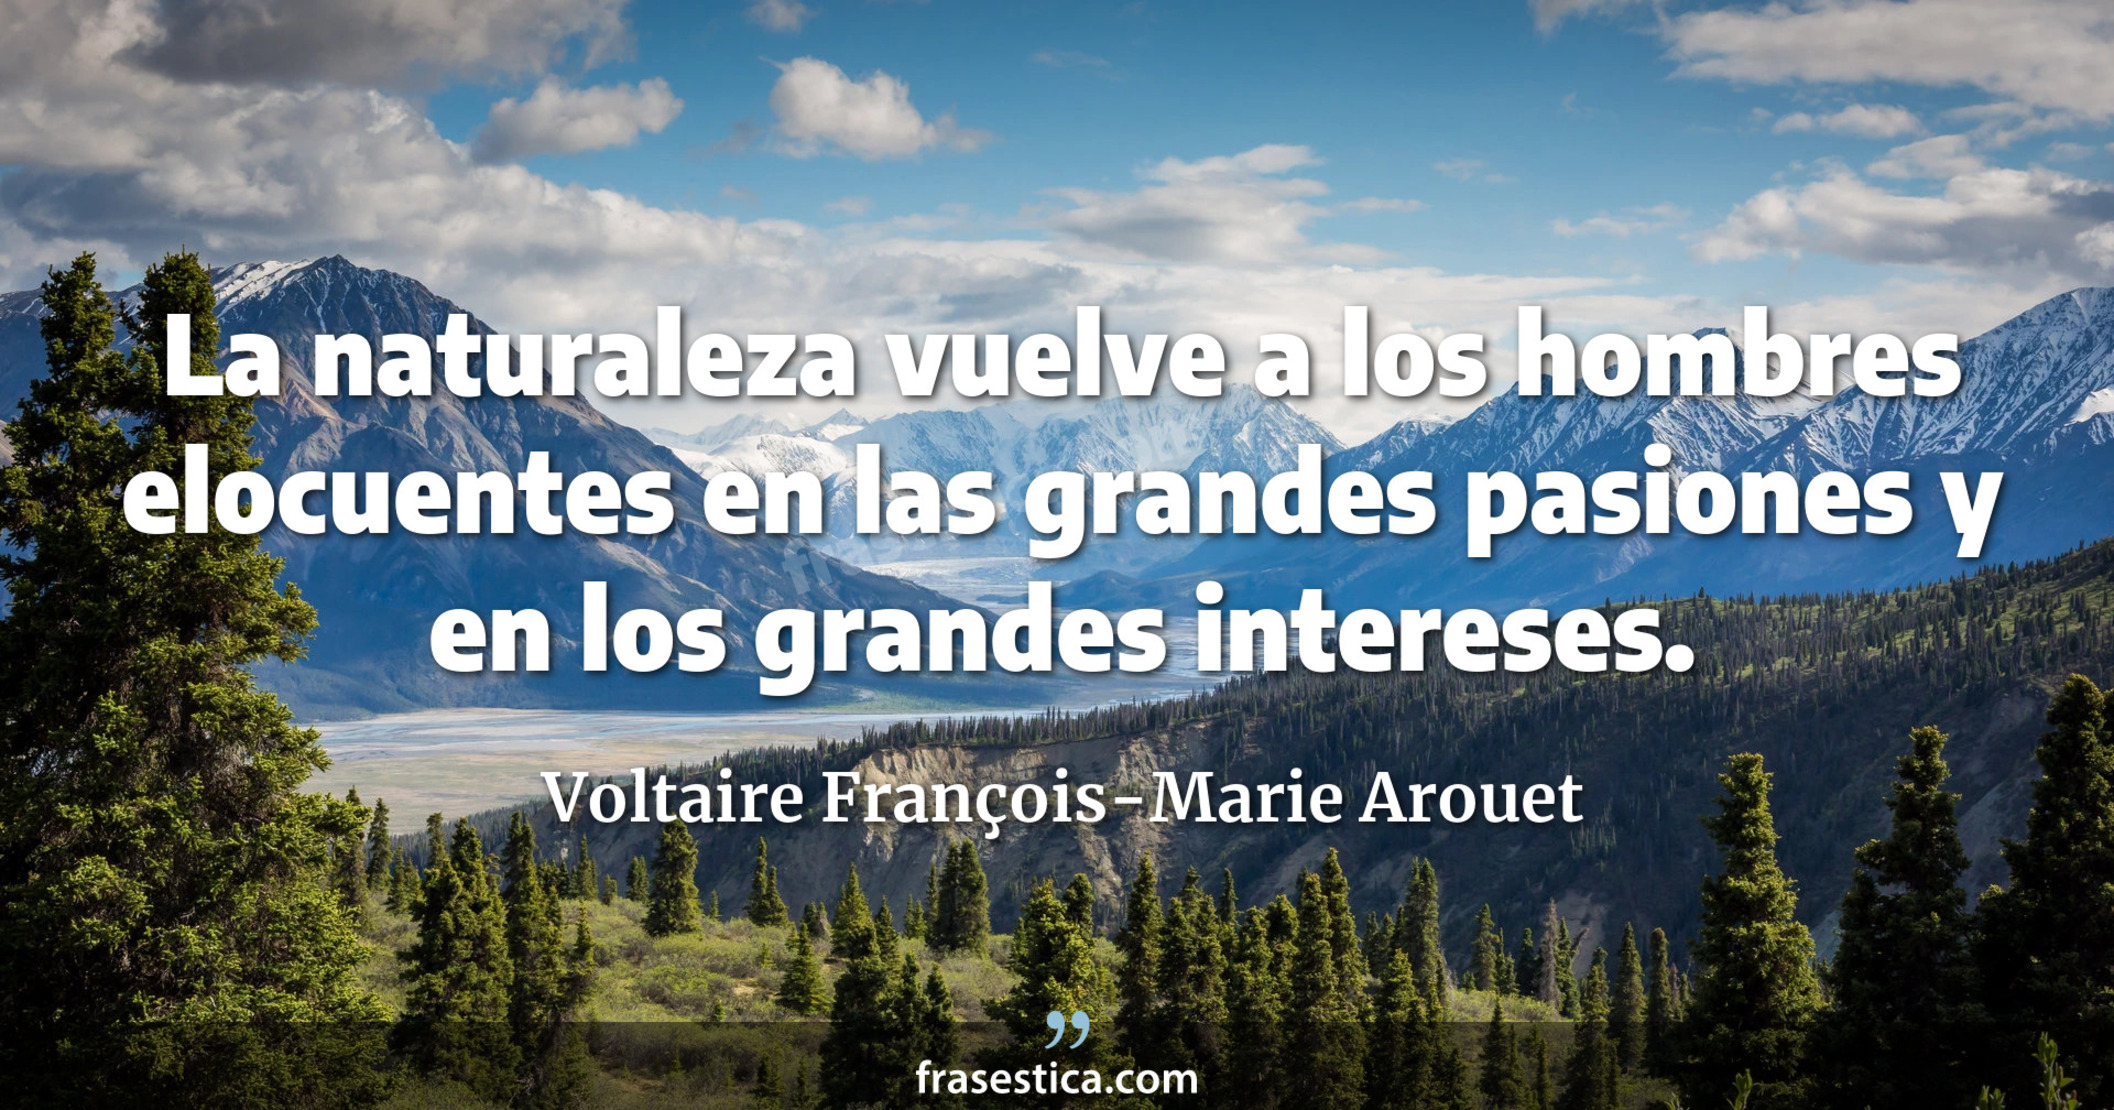 La naturaleza vuelve a los hombres elocuentes en las grandes pasiones y en los grandes intereses. - Voltaire François-Marie Arouet